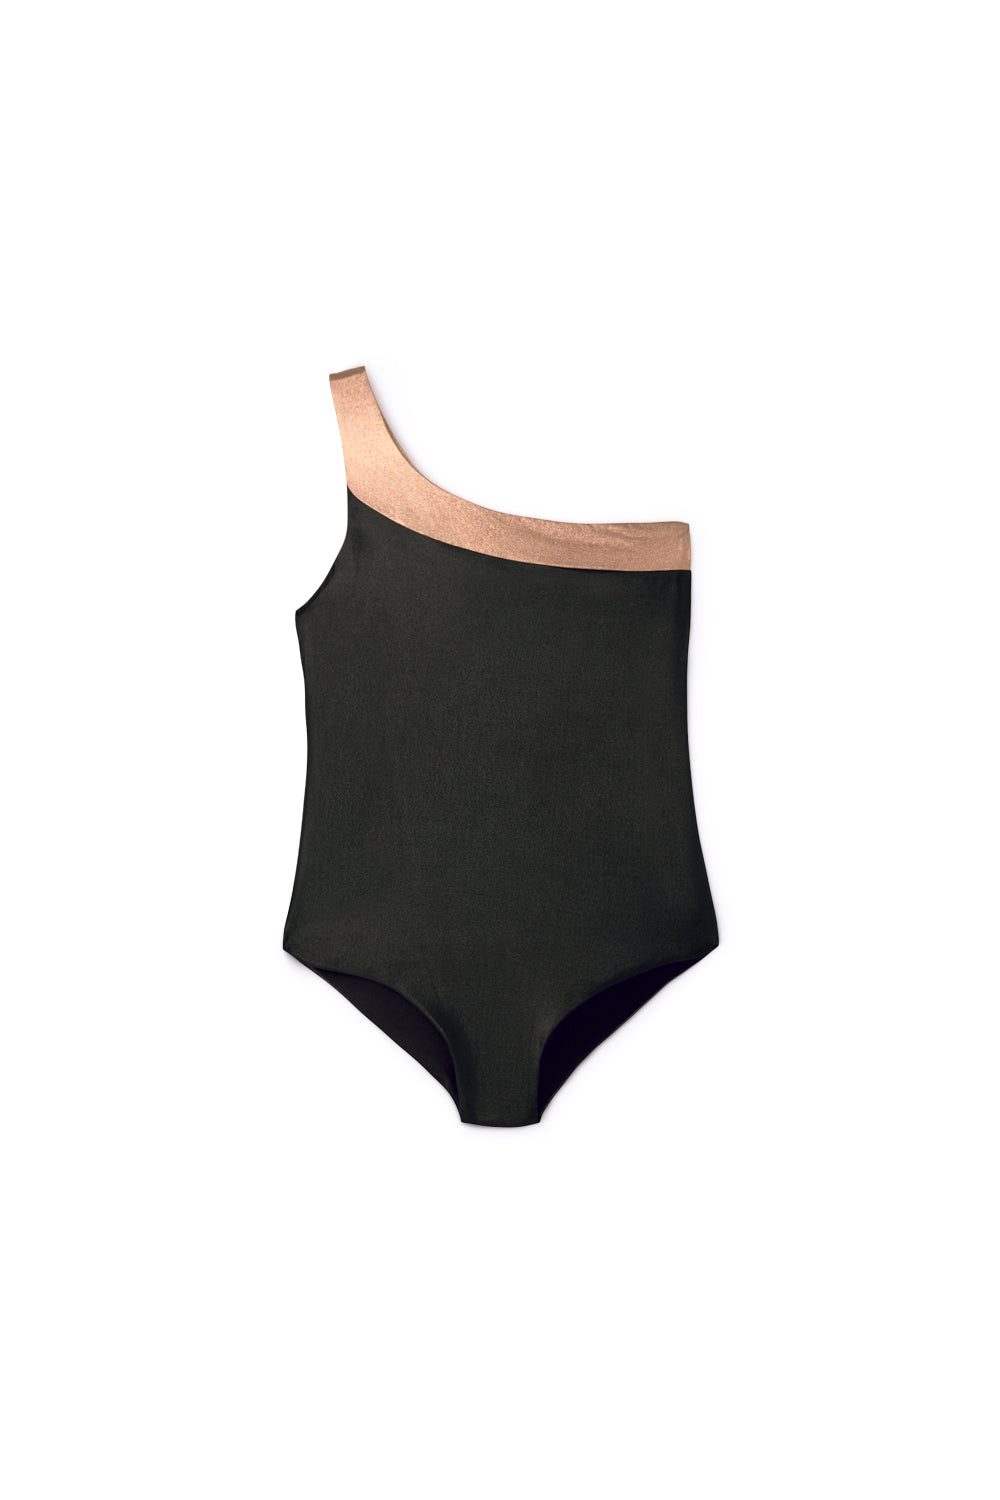 Little Creative Factory Asymmetric Bathing Suit - Black